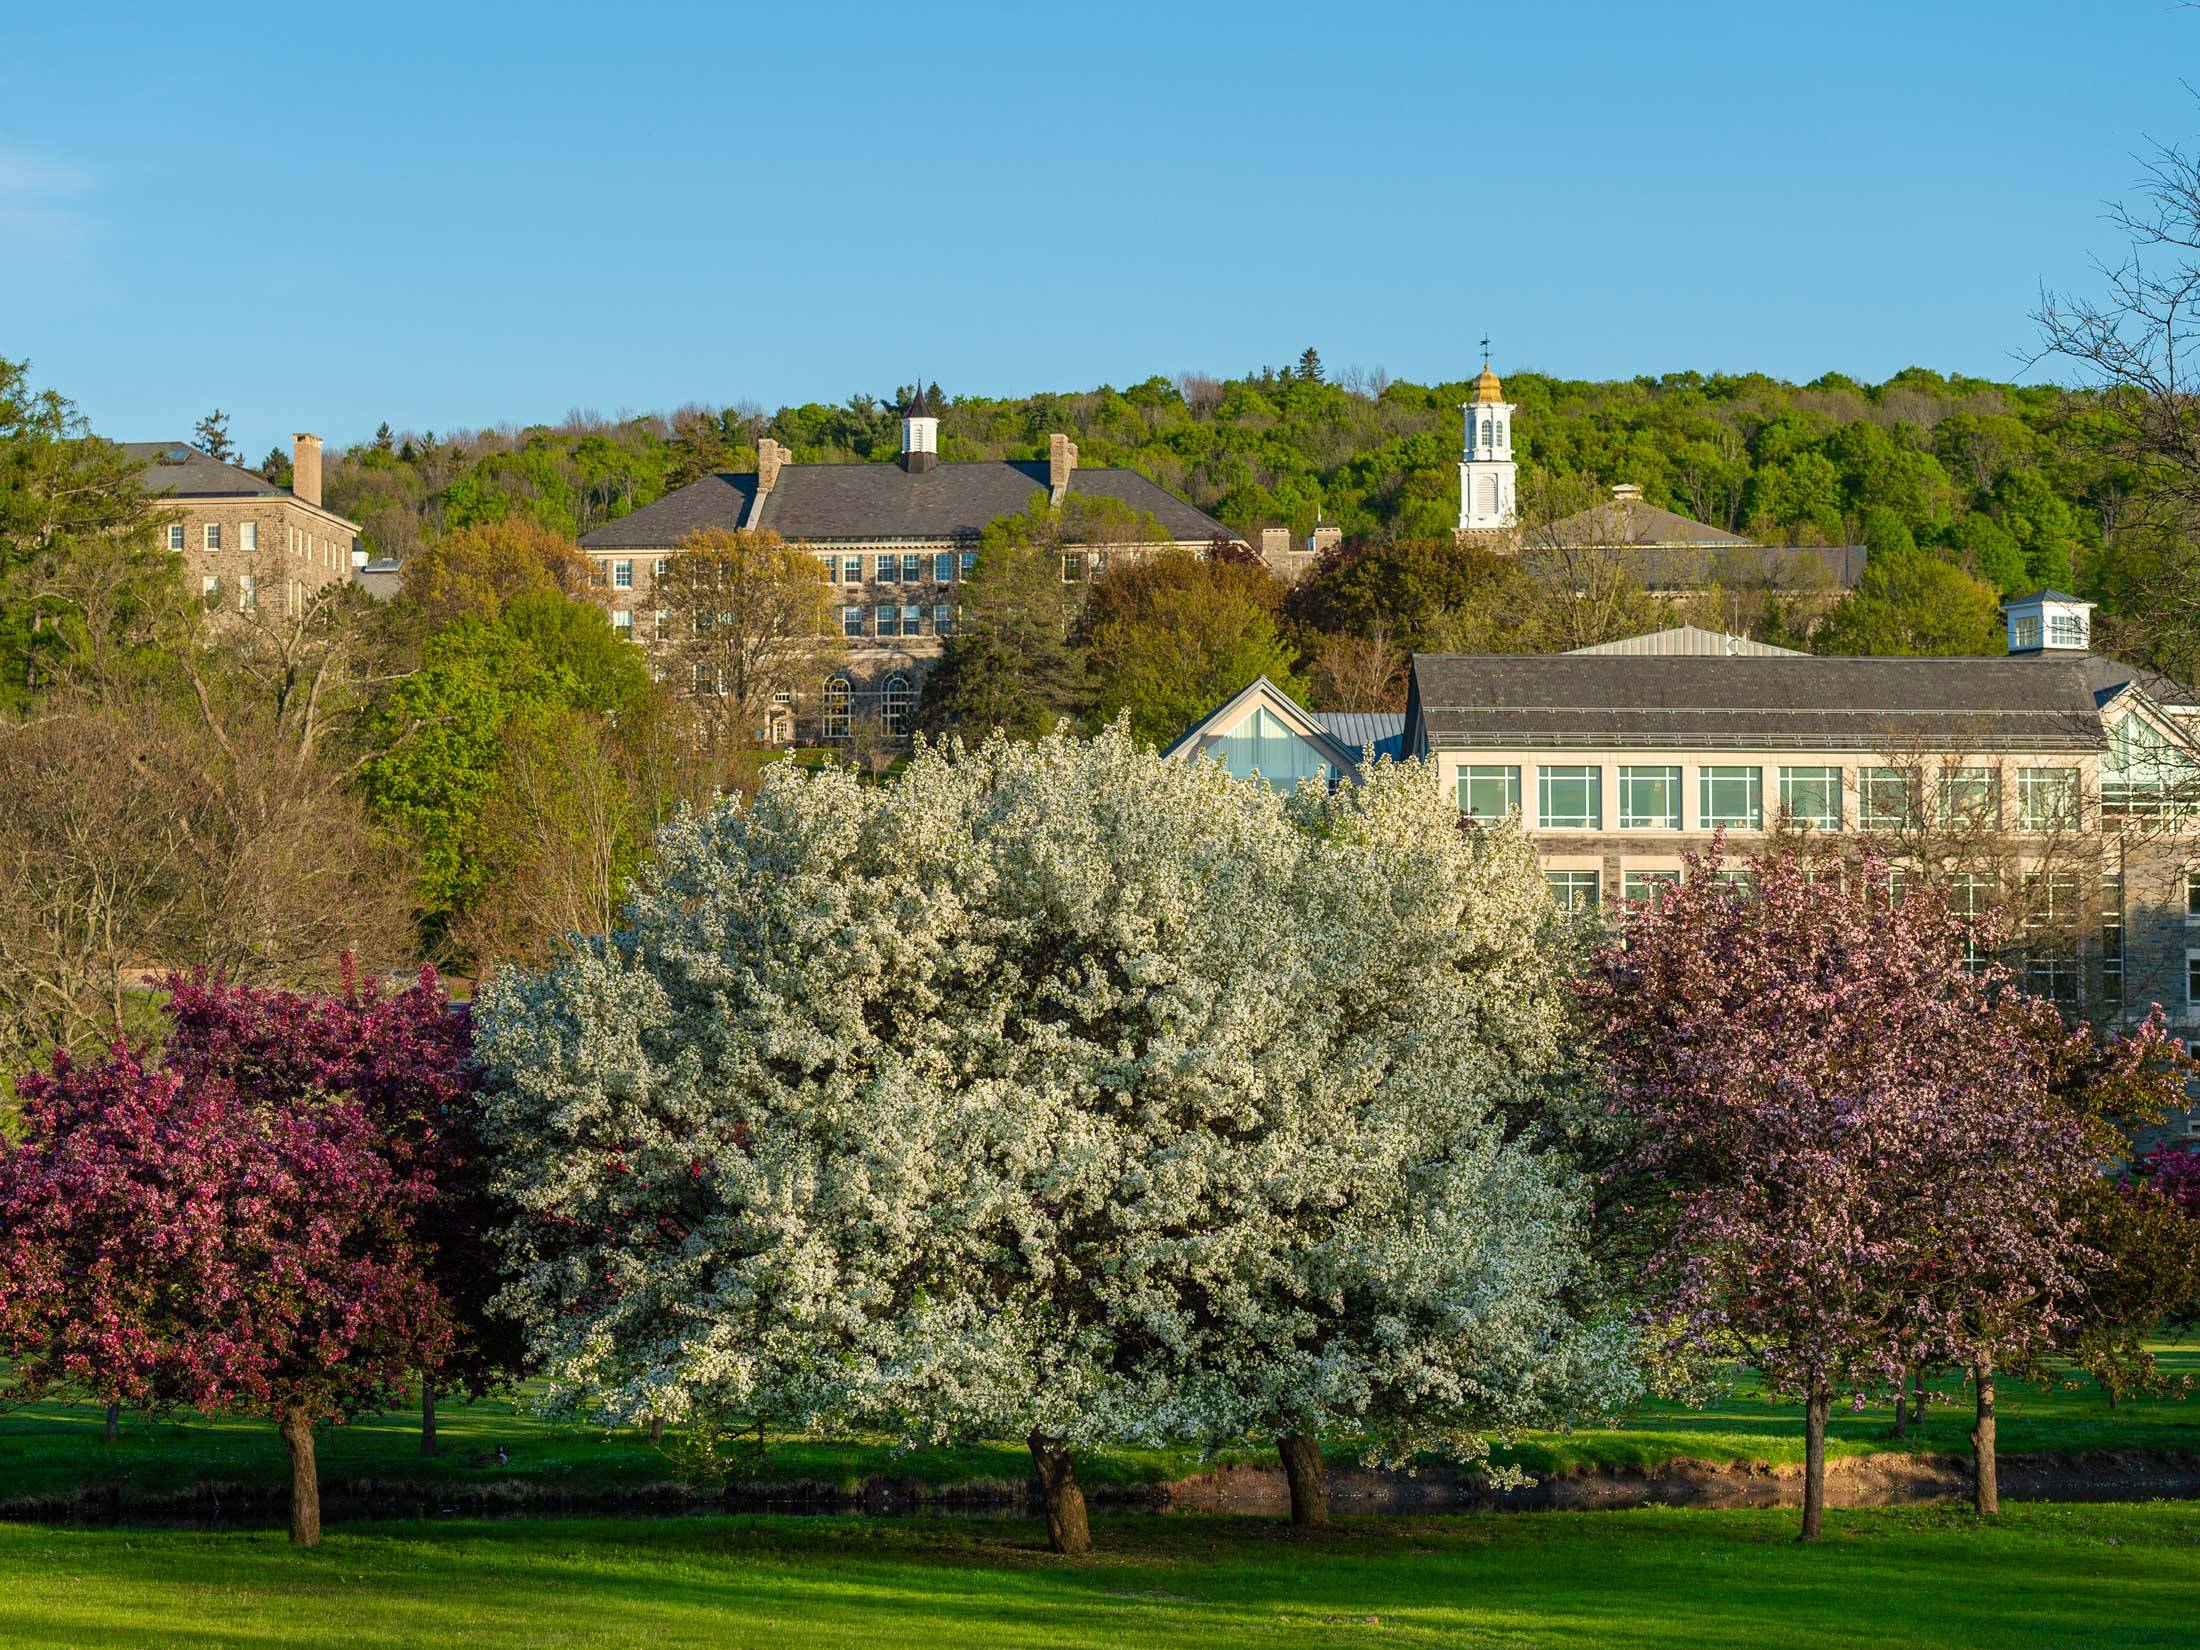 Campus against a blue springtime sky